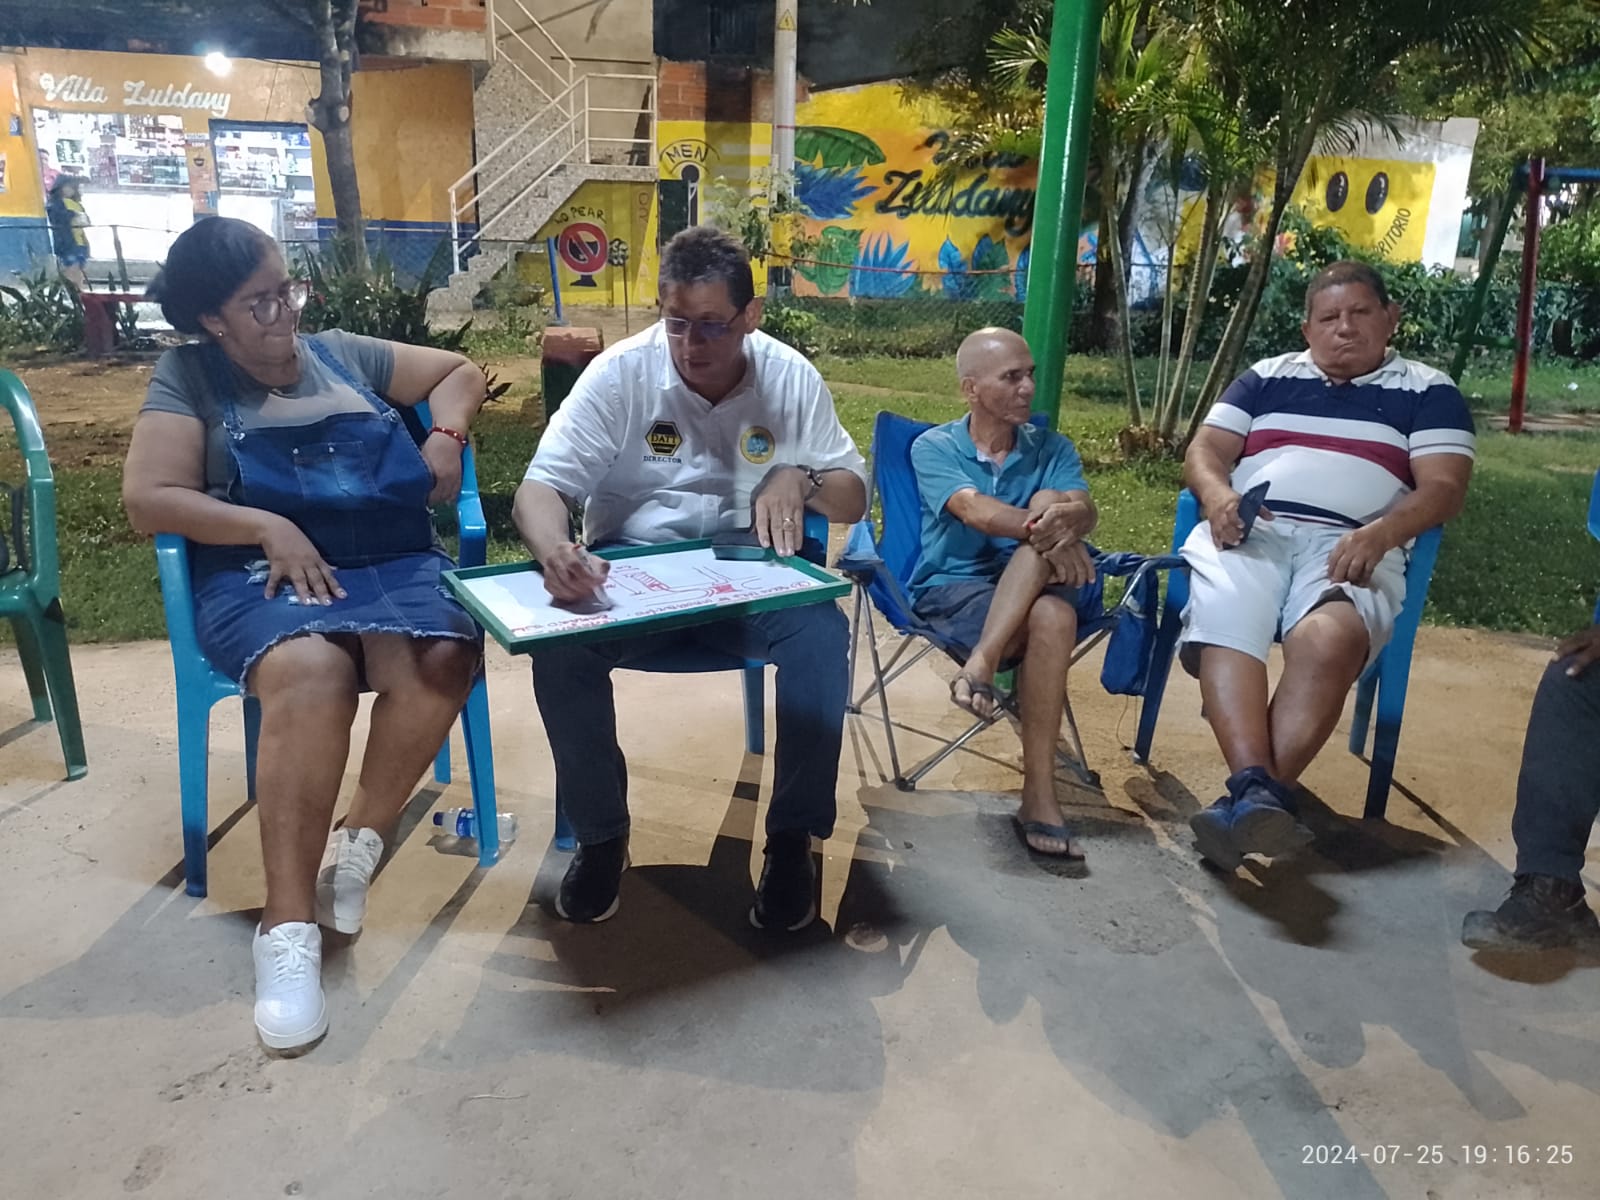 DATT escucha a comunidad de Villa Zuldany sobre el corbatín y movilidad del barrio